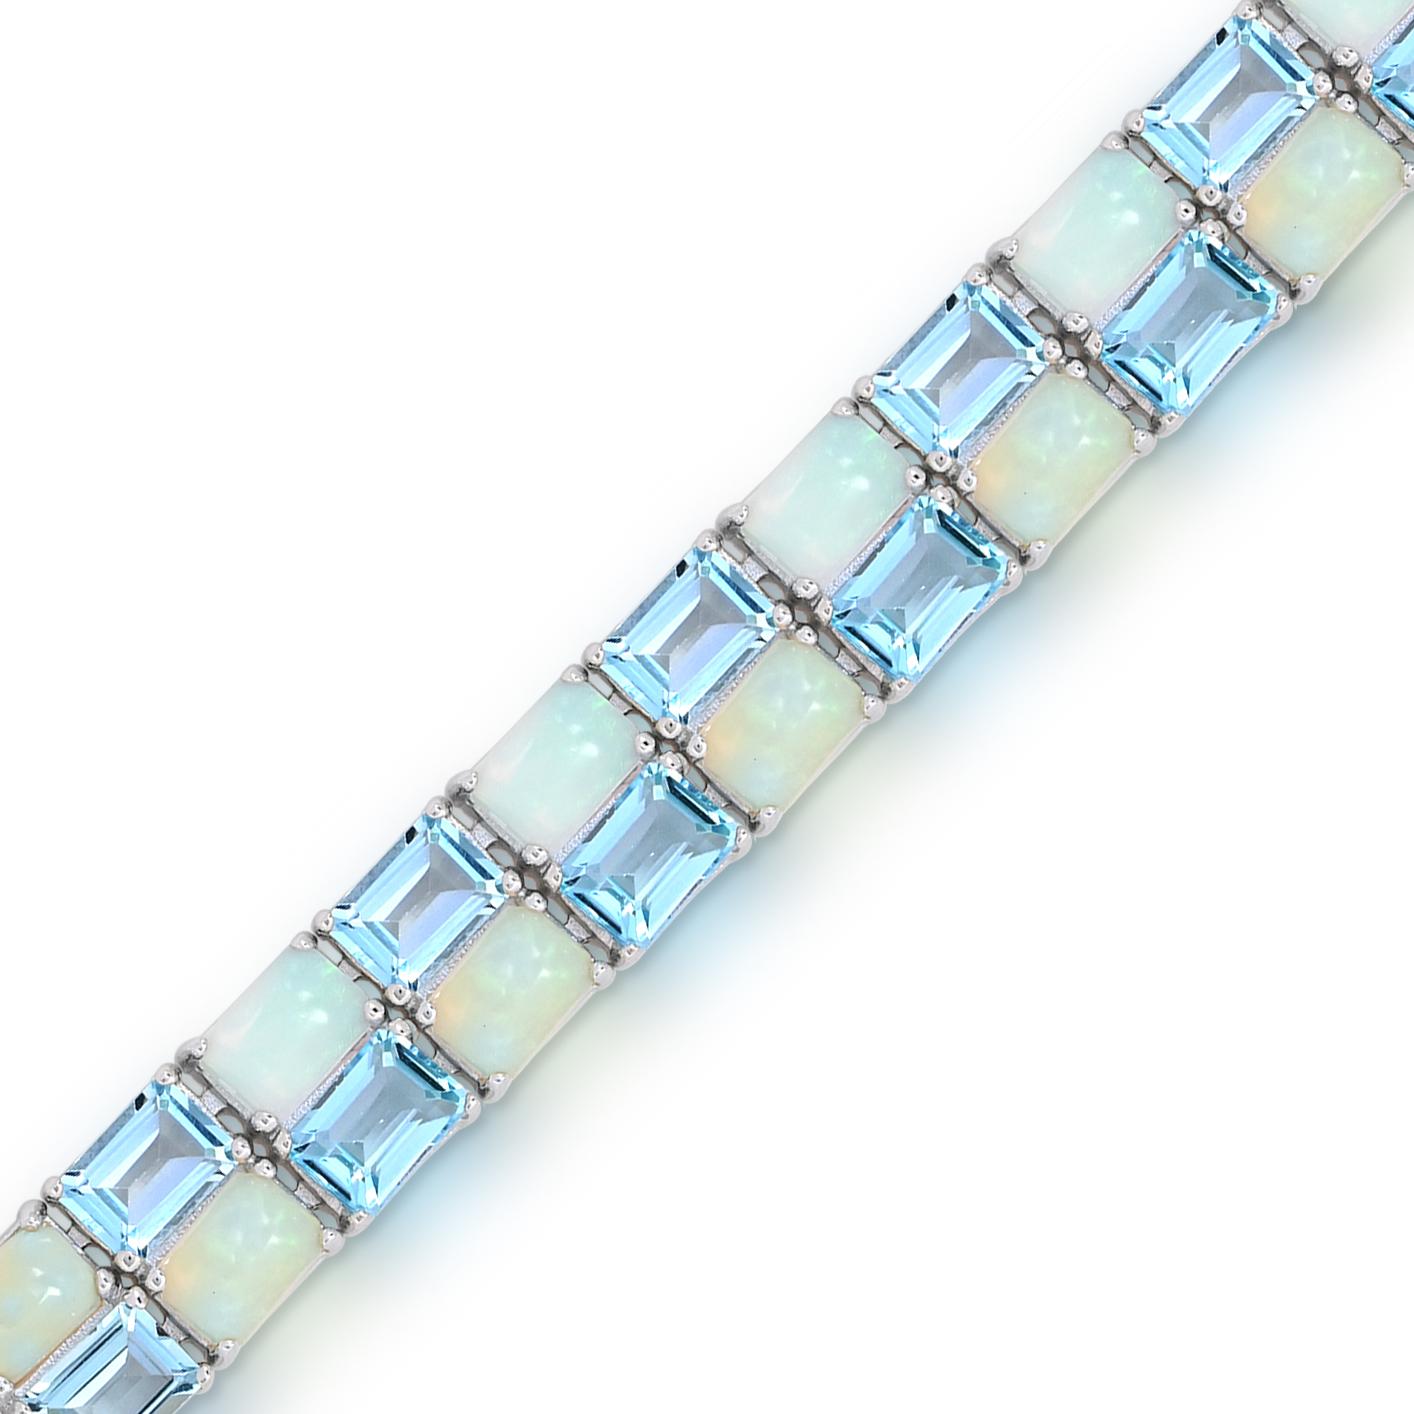 Ce magnifique bracelet présente 44 pièces de topaze bleue ciel brillante de taille émeraude et des pierres opales octogonales serties en alternance, créant ainsi un design visuellement captivant. Fabriqué avec précision et souci du détail, le